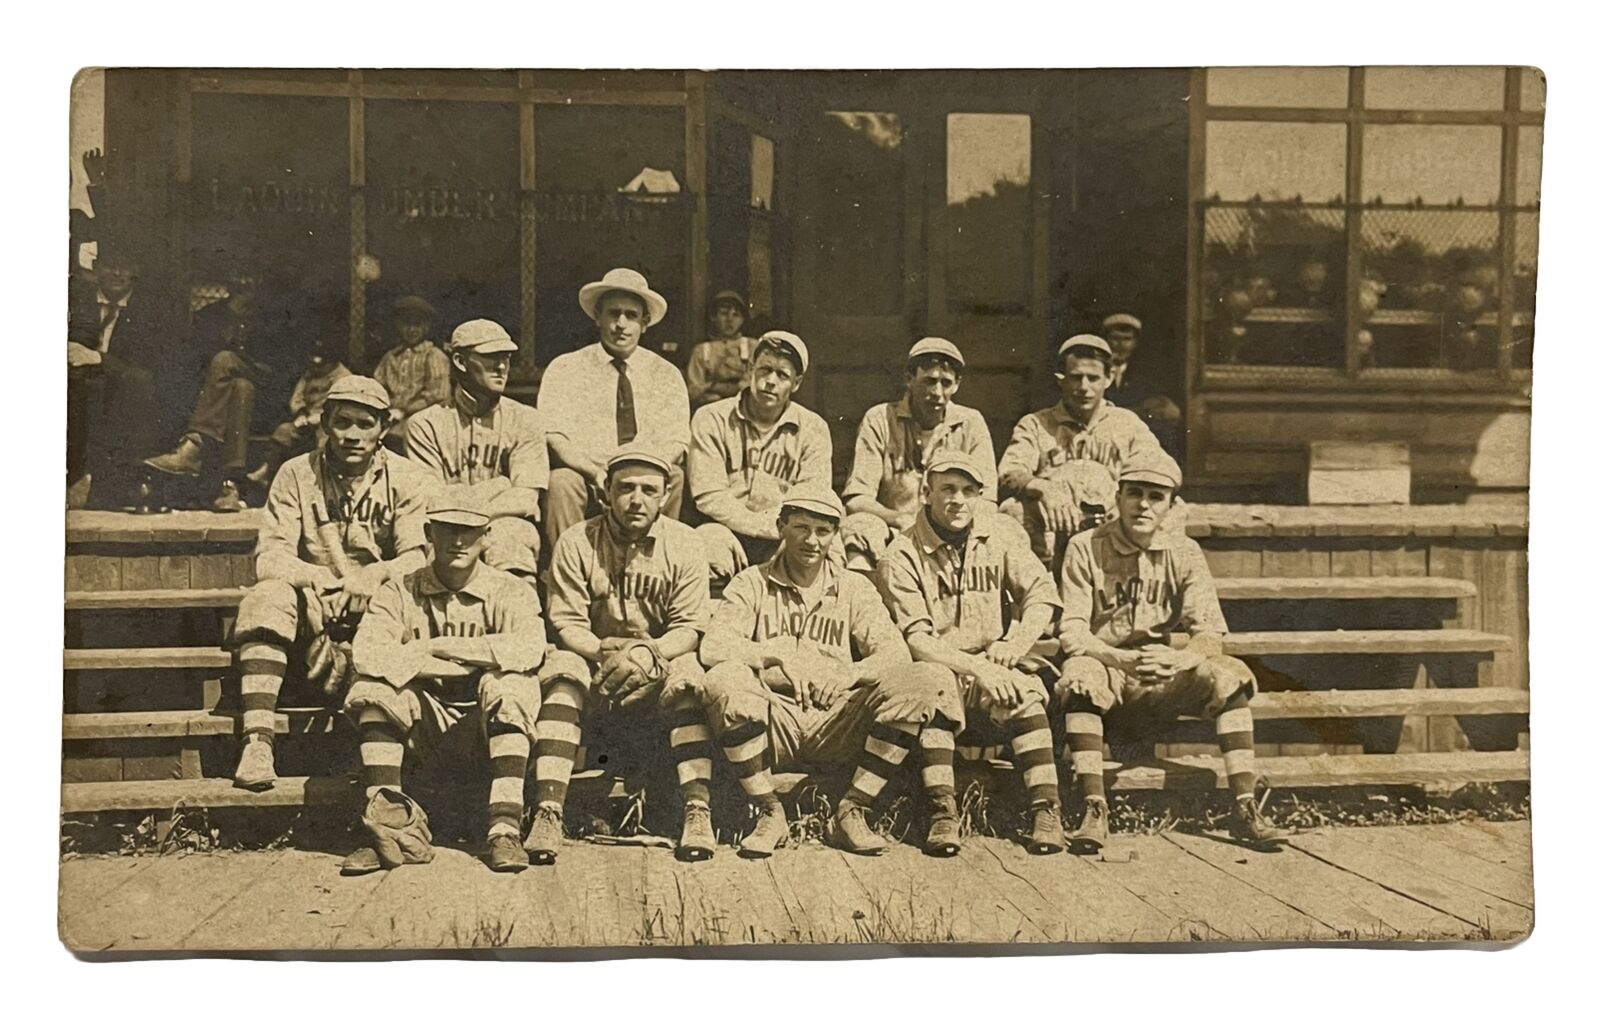 Laquin PA Baseball Team Photo Harbot Vintage Antique Unused Penna Postcard